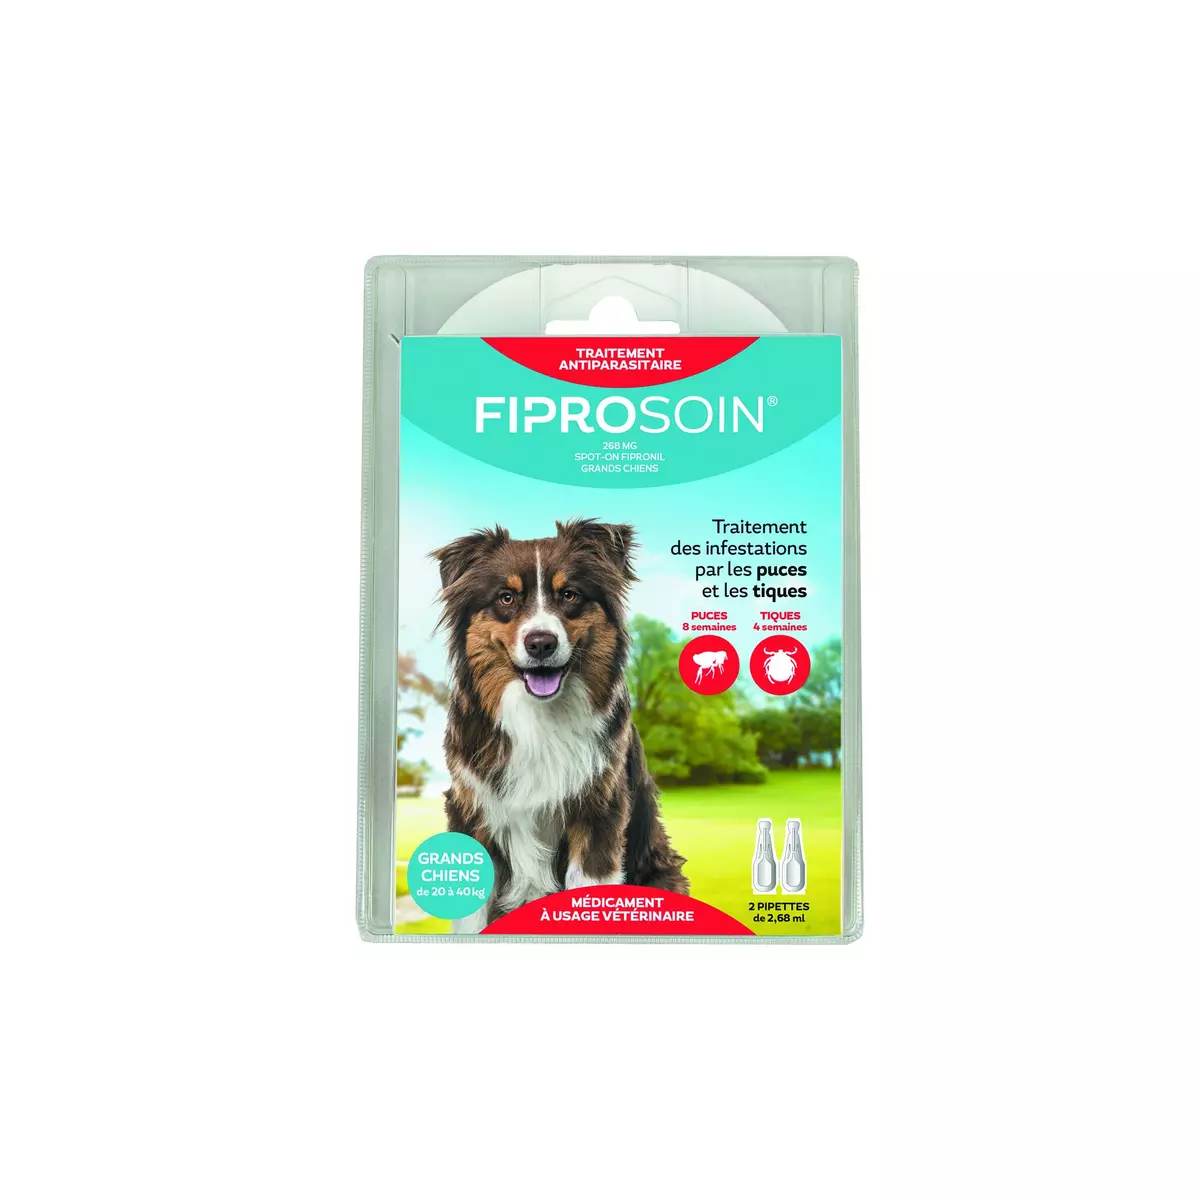 FIPROSOIN Traitement antiparasitaire pour grands chiens de 20 à 40kg 2 pipettes 2x2,68ml